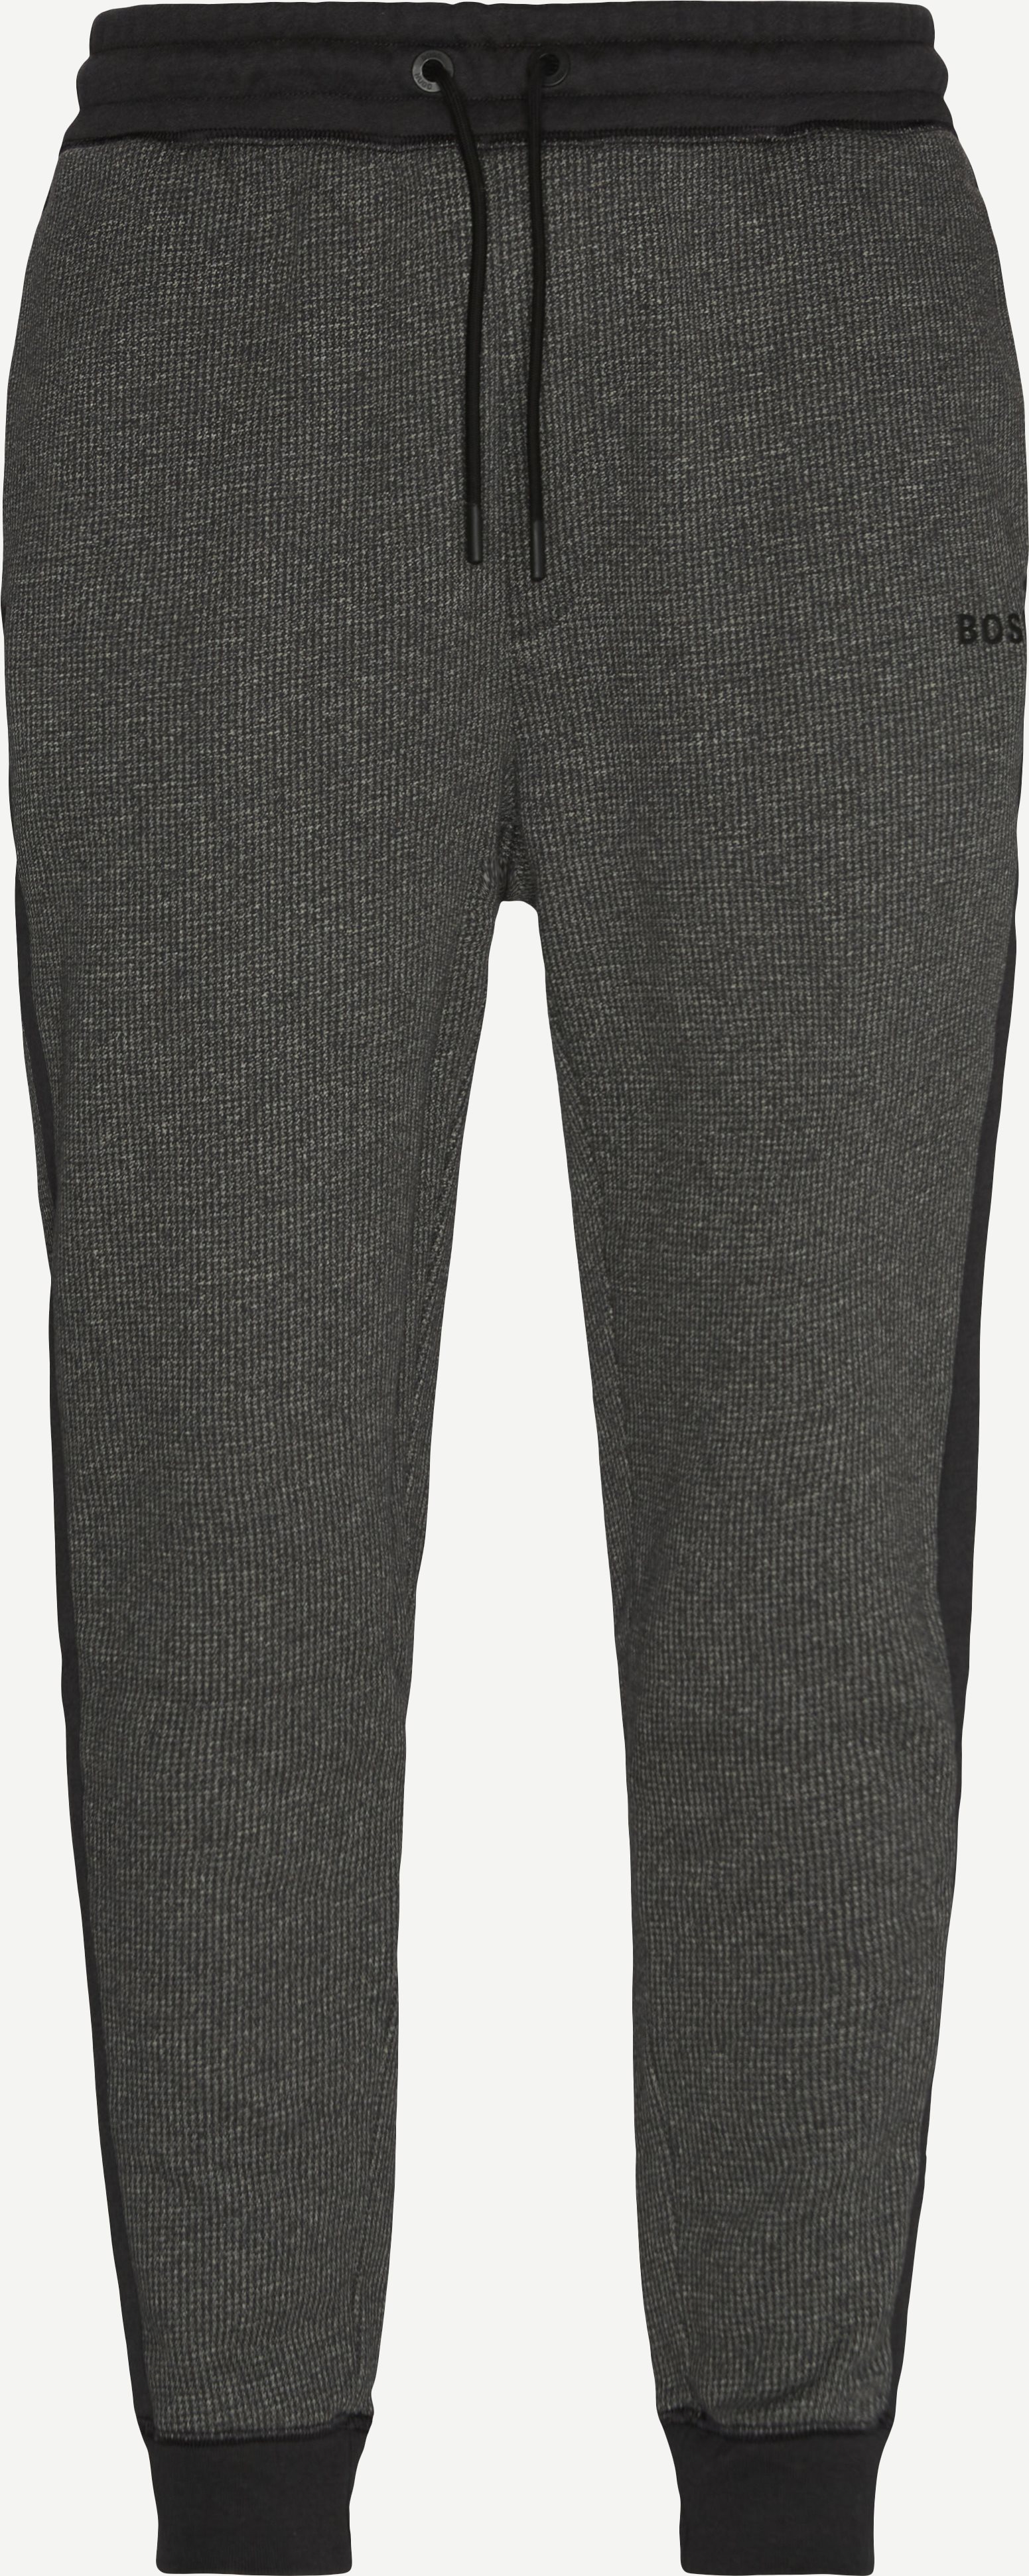 Sopa Sweatpants - Bukser - Regular fit - Sort